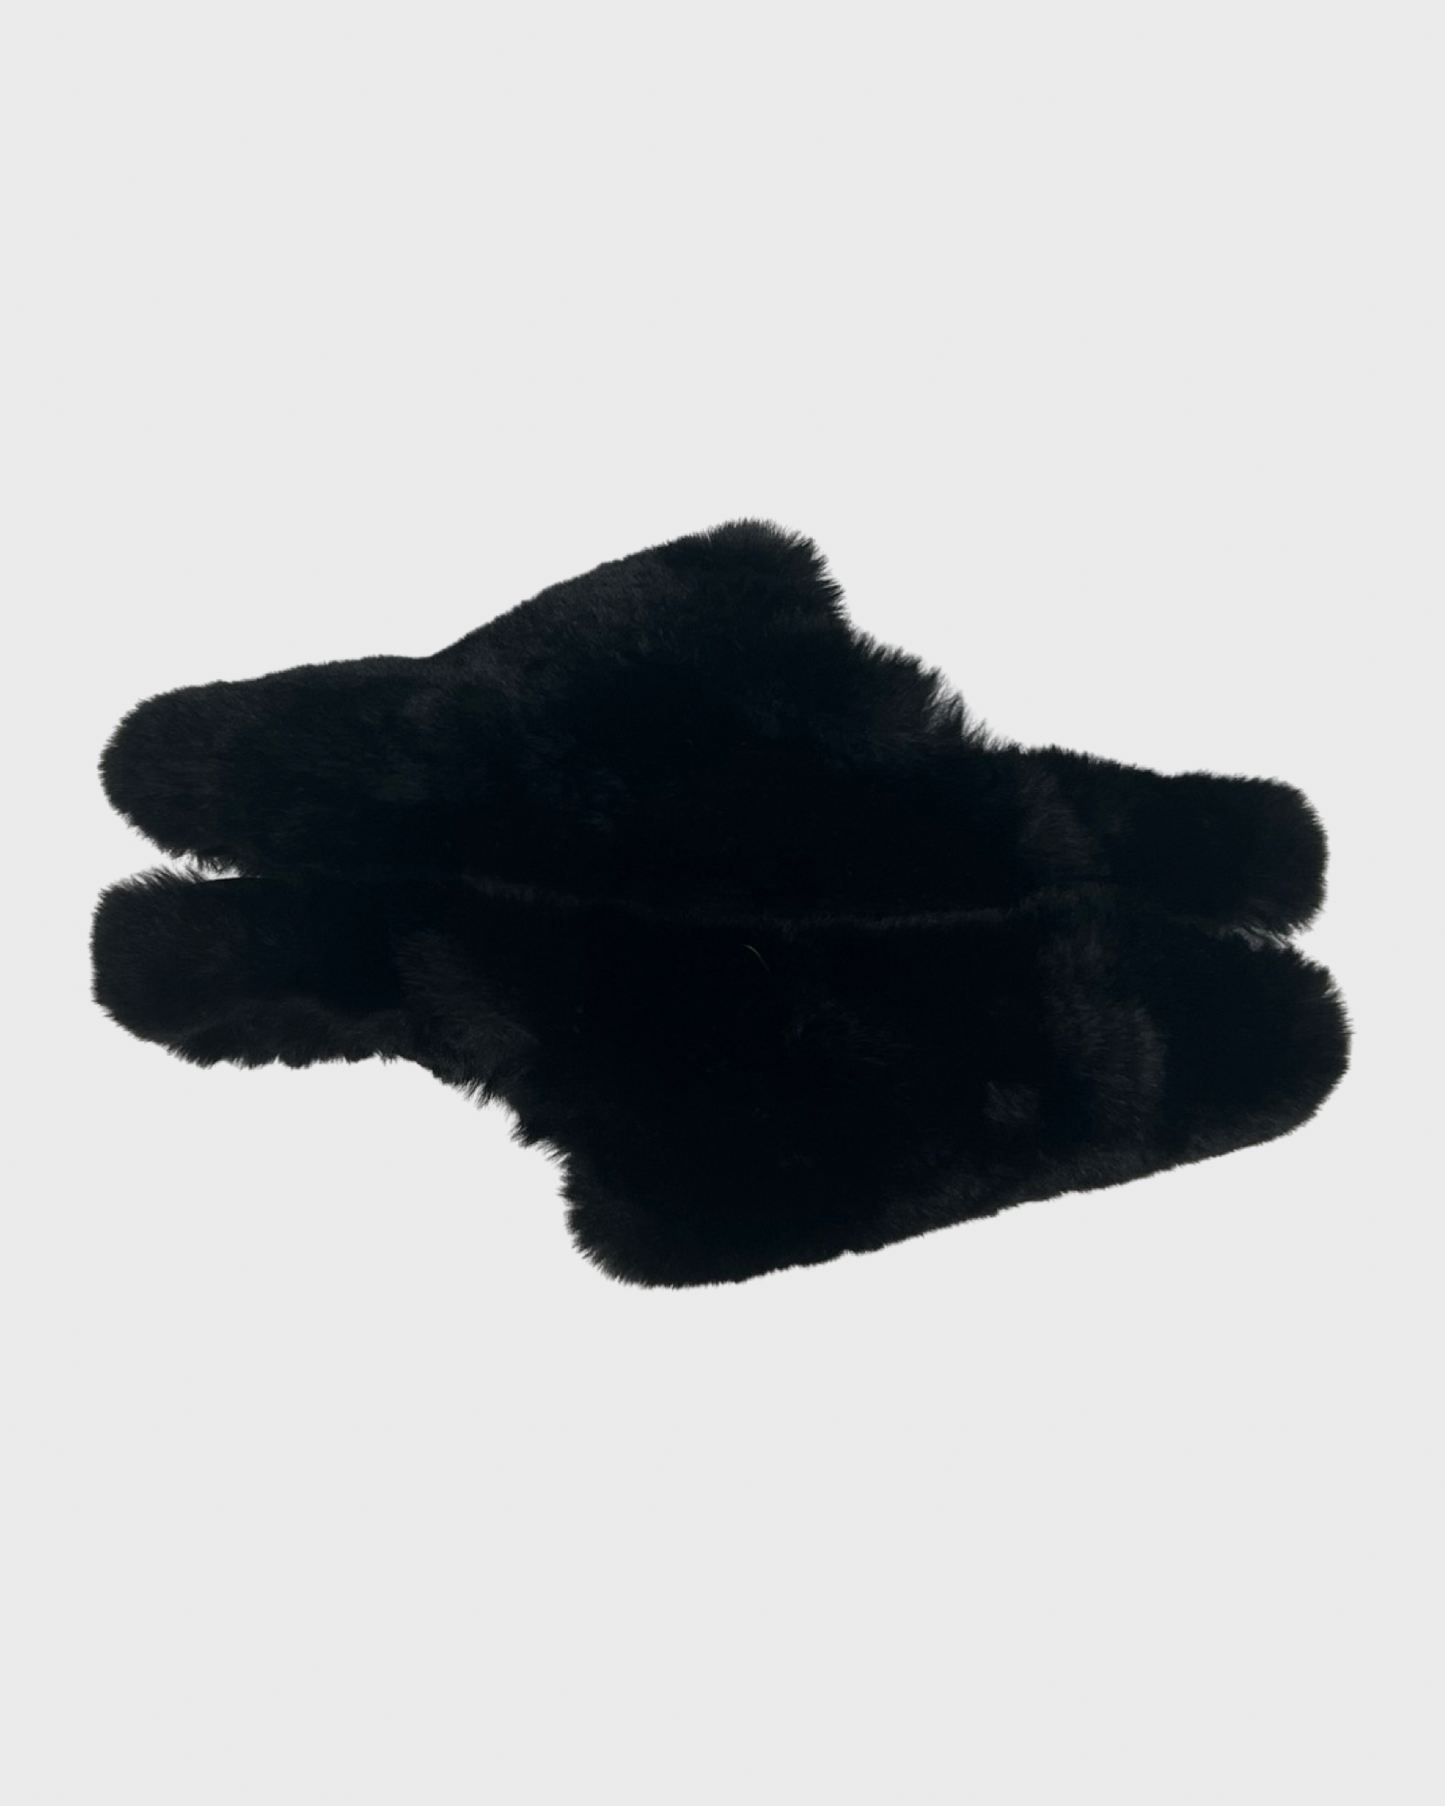 Balenciaga faux fur mules in black SZ:41